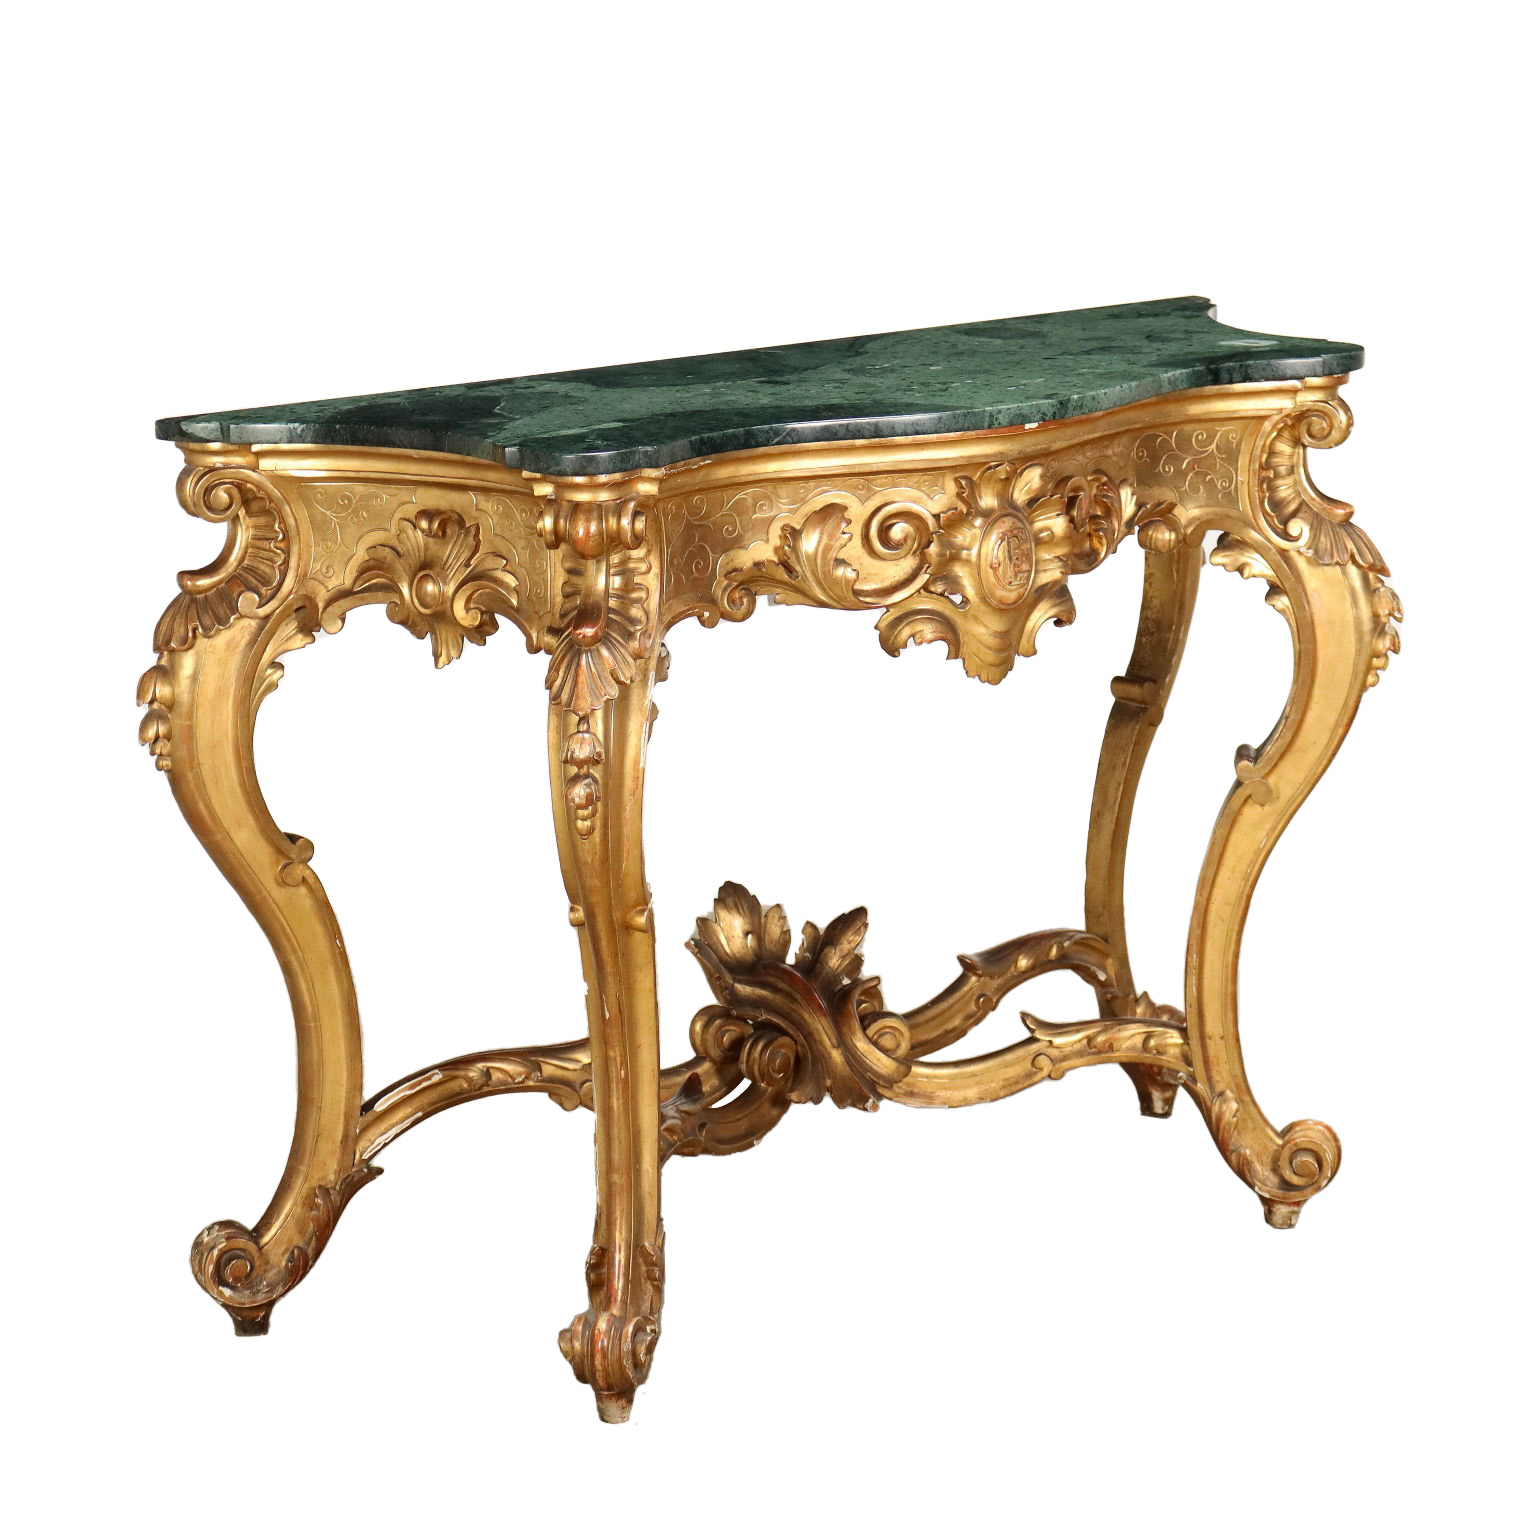 Consolle e specchiera, legno dorato, stile barocco